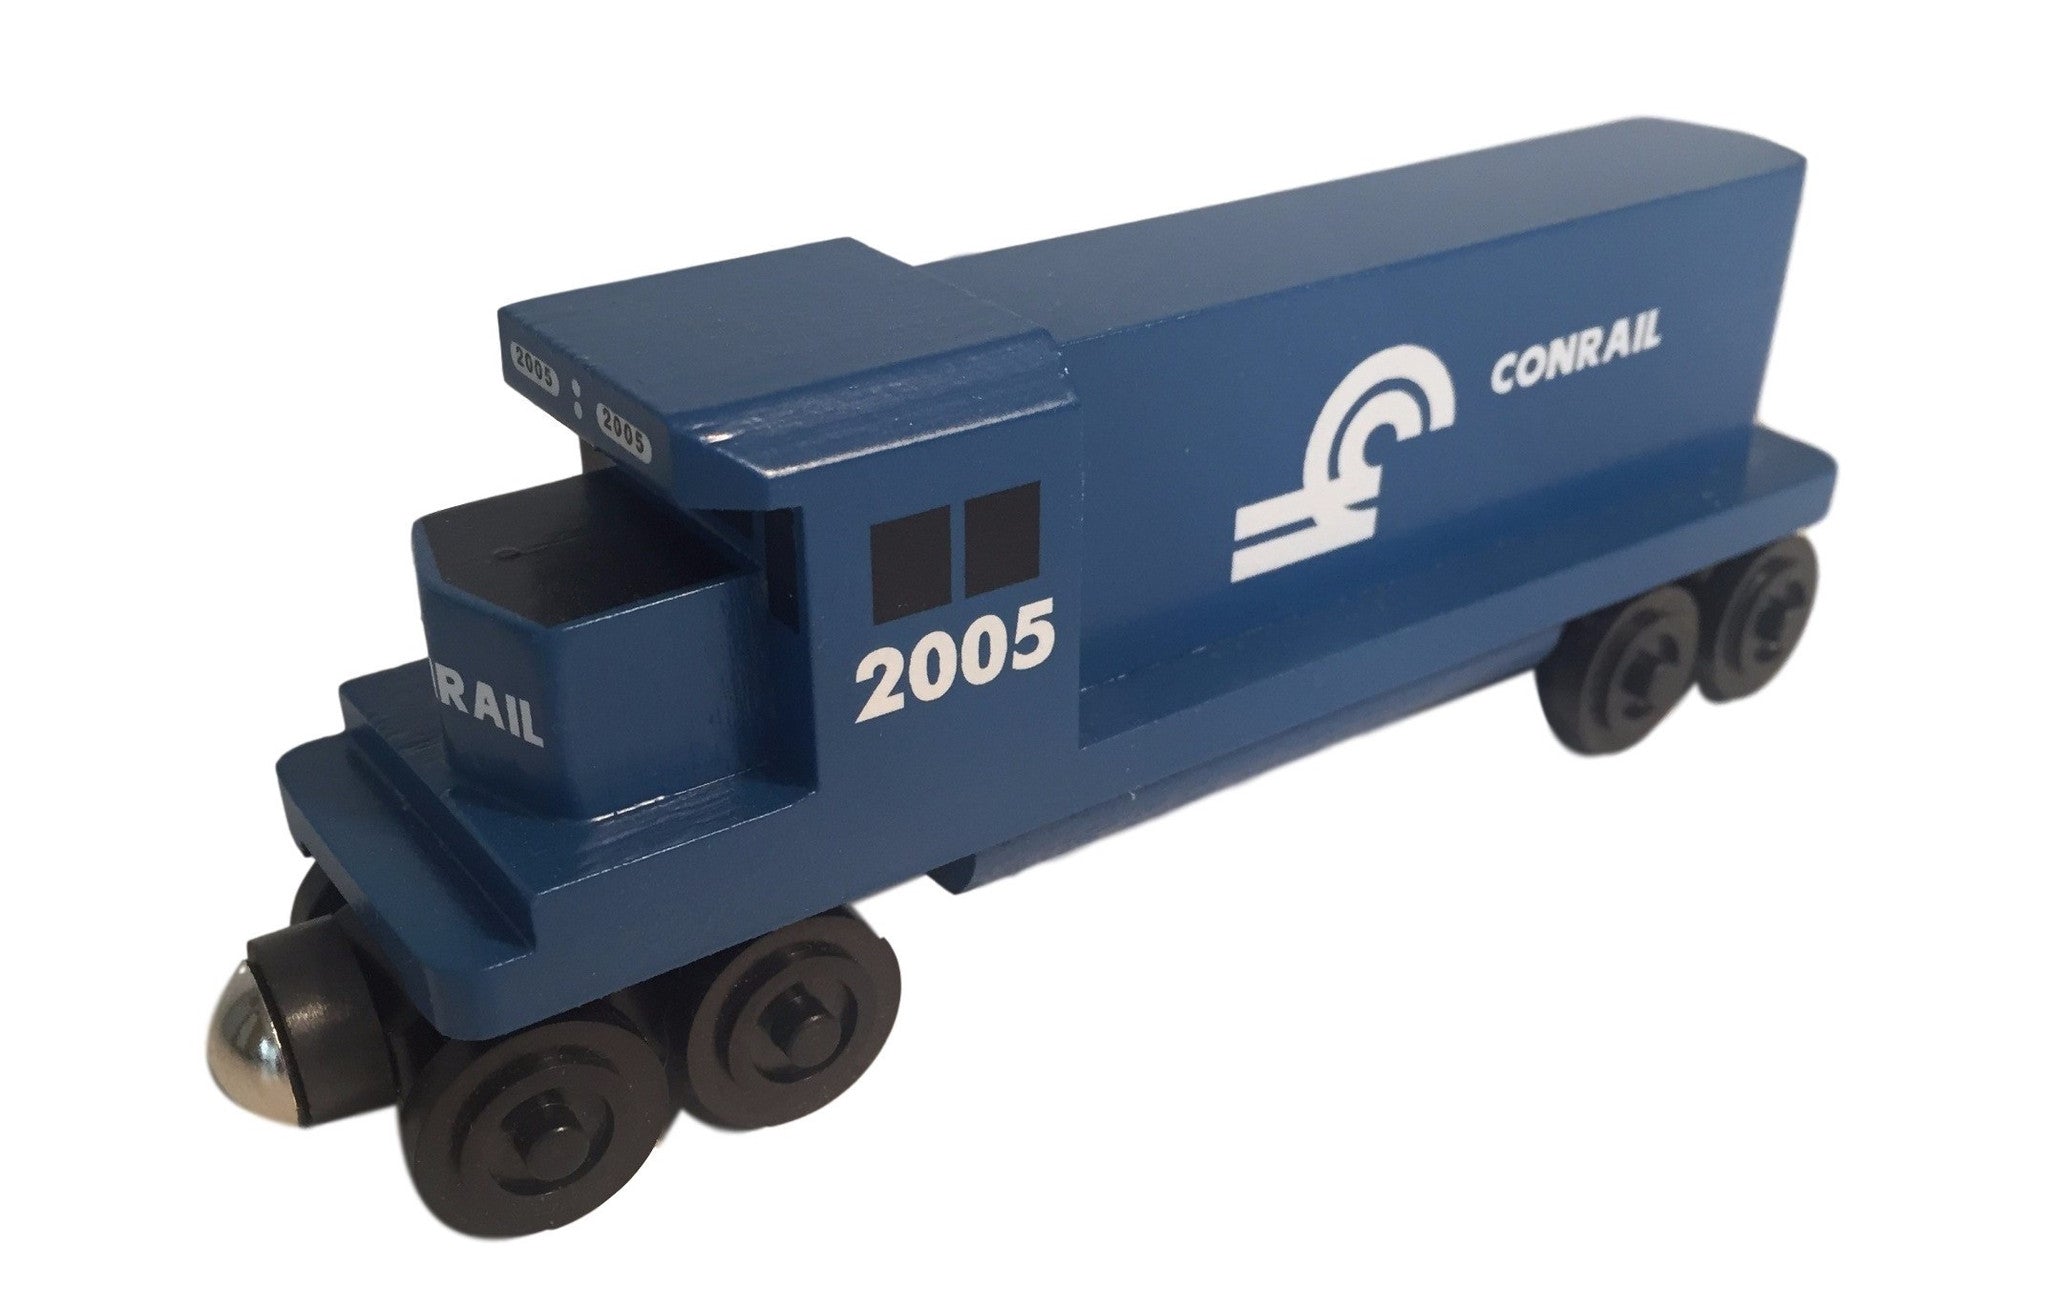 Whittle Shortline Railroad GP-38 Conrail Diesel Engine Wooden Toy Train